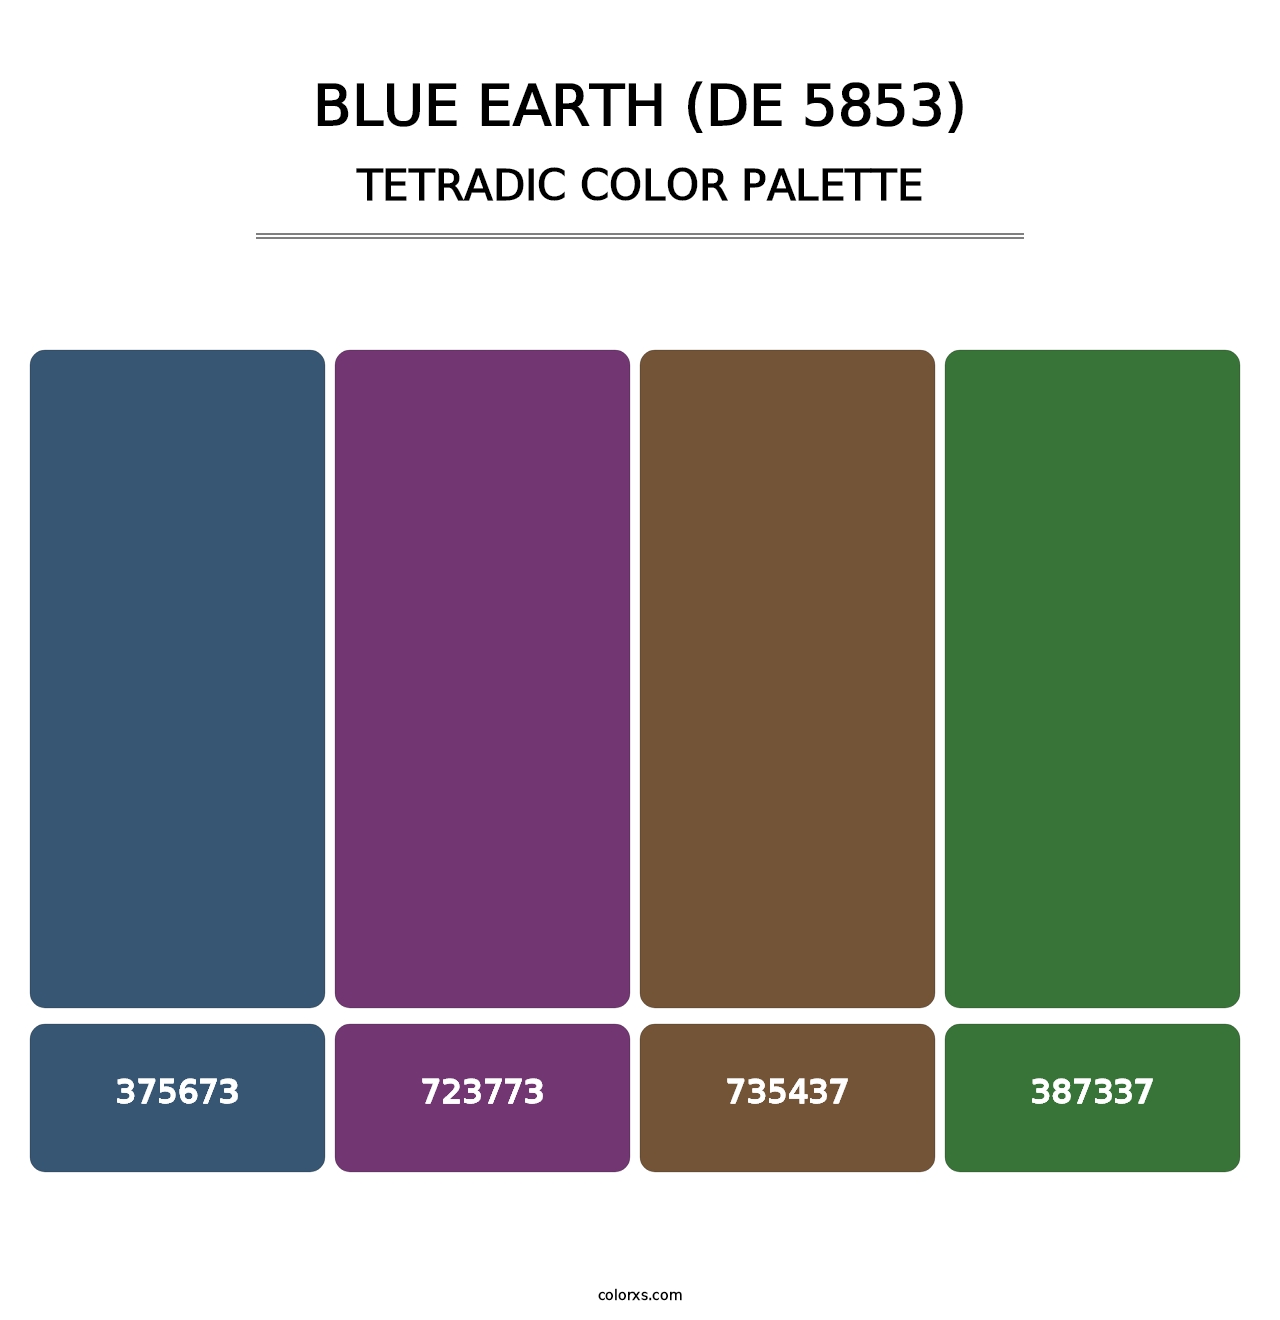 Blue Earth (DE 5853) - Tetradic Color Palette